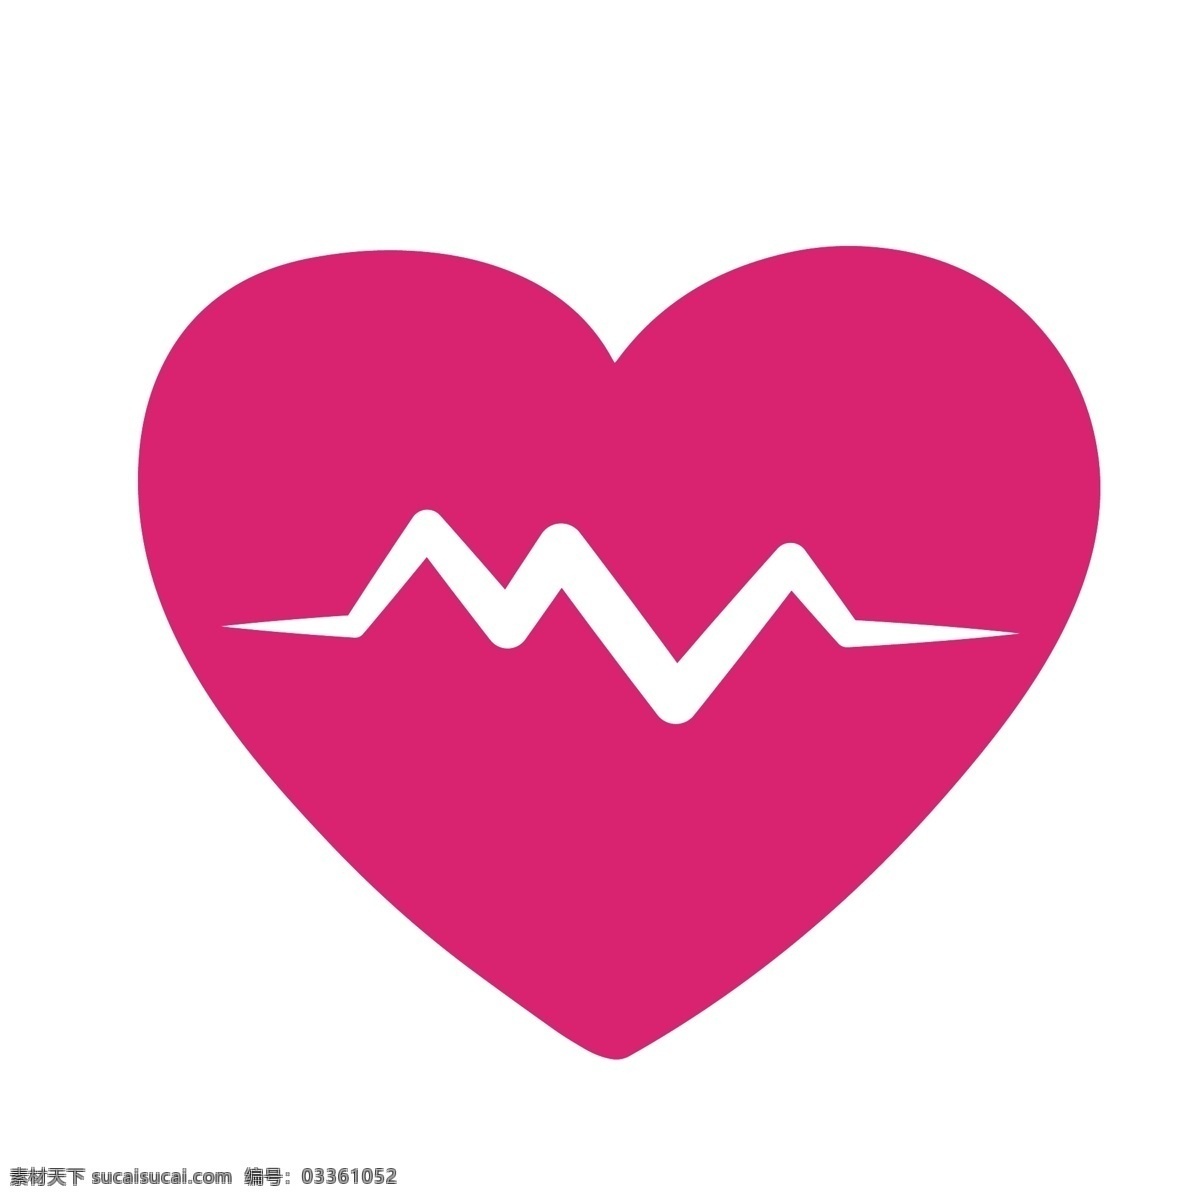 粉红色 卡通 心电图 心脏 线段 心率 医院 心肺功能 诊所 频率 电流 卫生 医疗 检查 心形